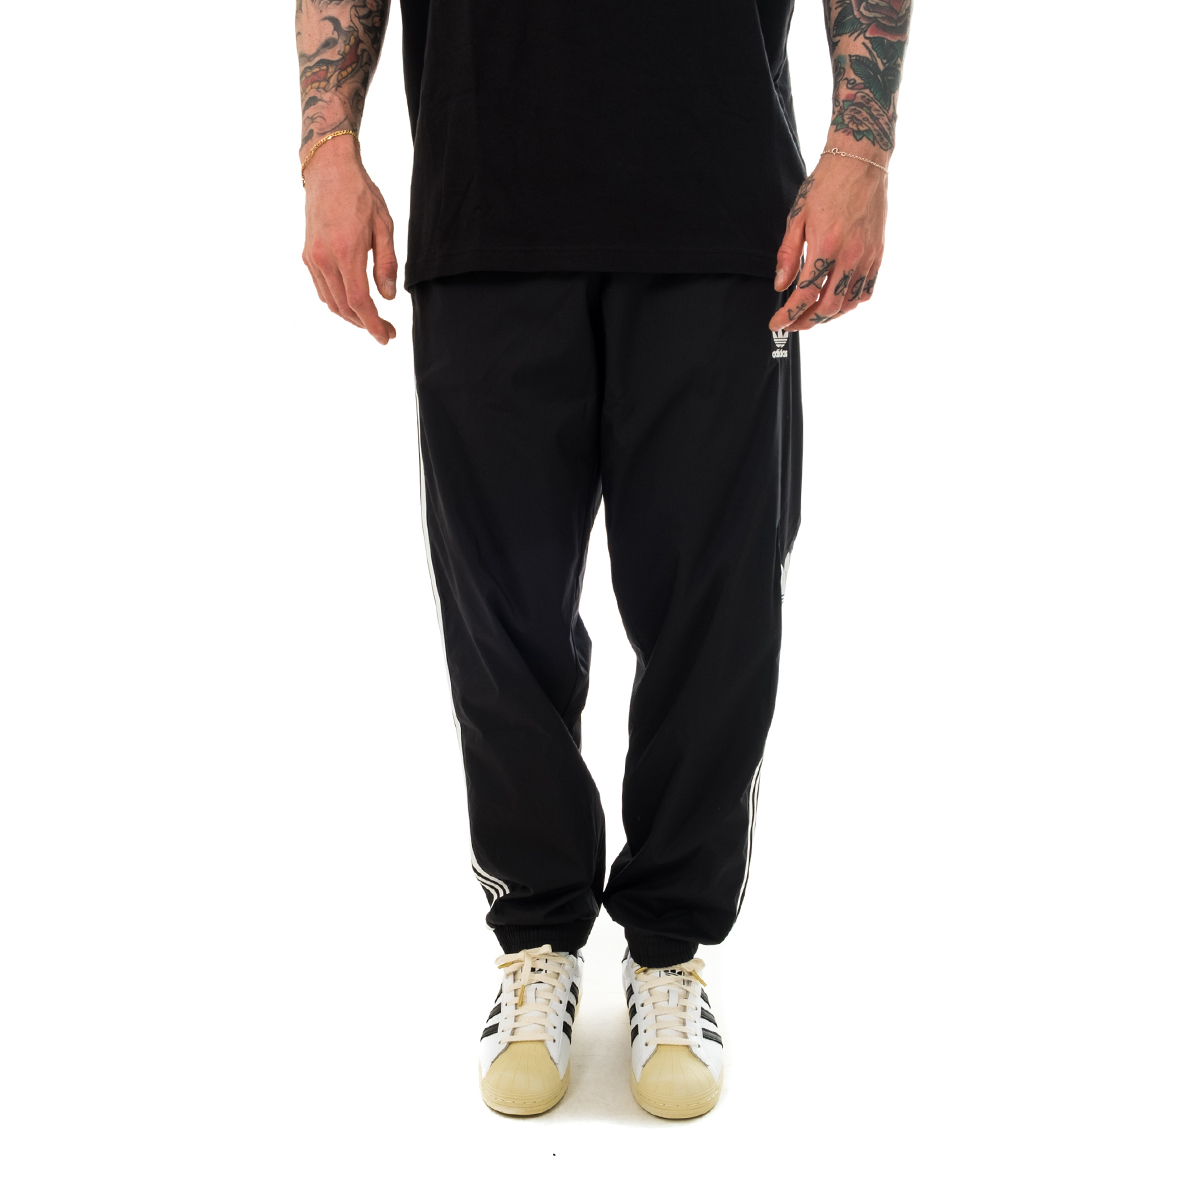 Pantalones Suit Hombre ADIDAS 3D TF TP GN3543 | eBay